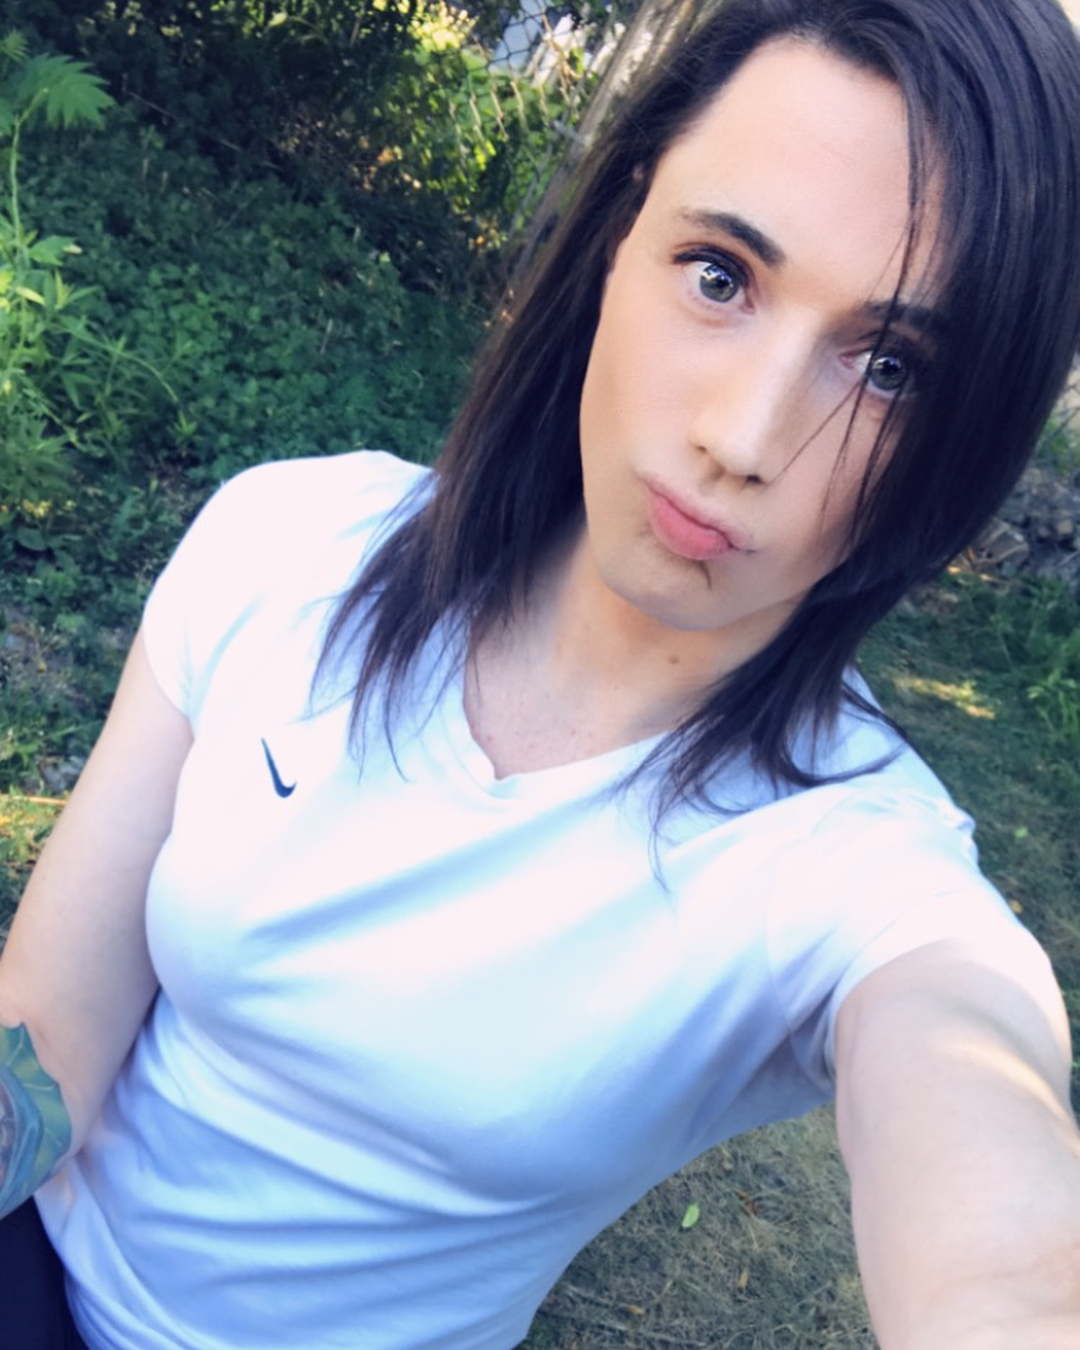 Transgirl park selfie